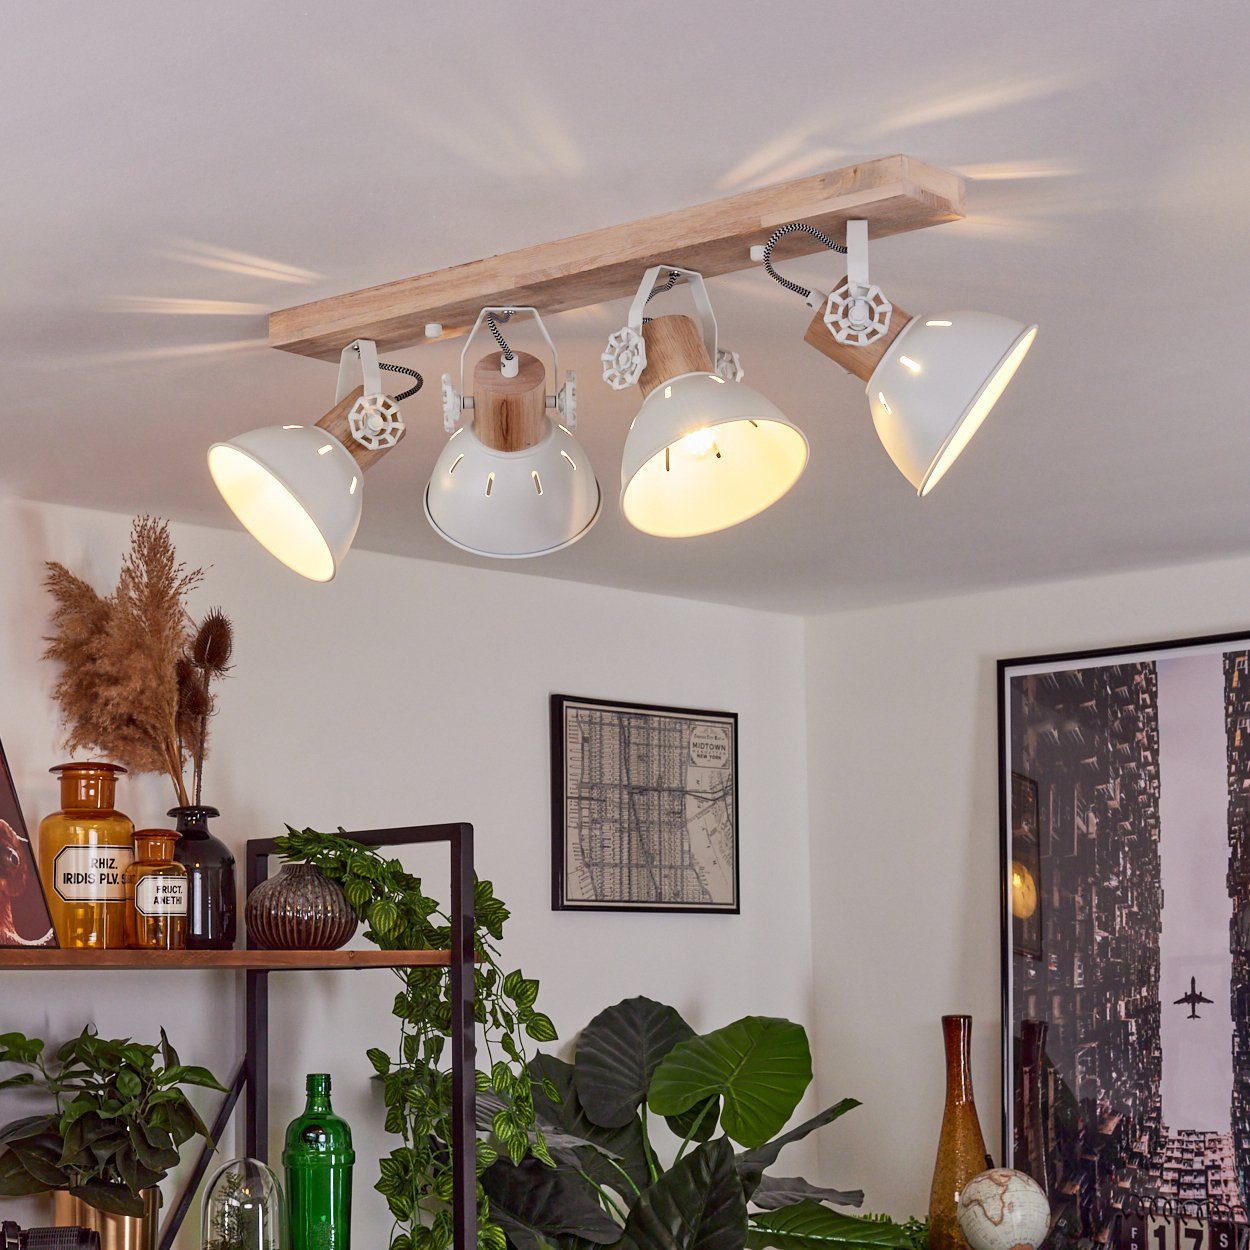 Vintage-Design mit Metall/Holz Strahlern,E27 Retro-Leuchte ohne Leuchtmittel, im in »Cotes« Deckenleuchte Weiß/Natur, Deckenlampe Holzbalken,verstellbaren hofstein aus